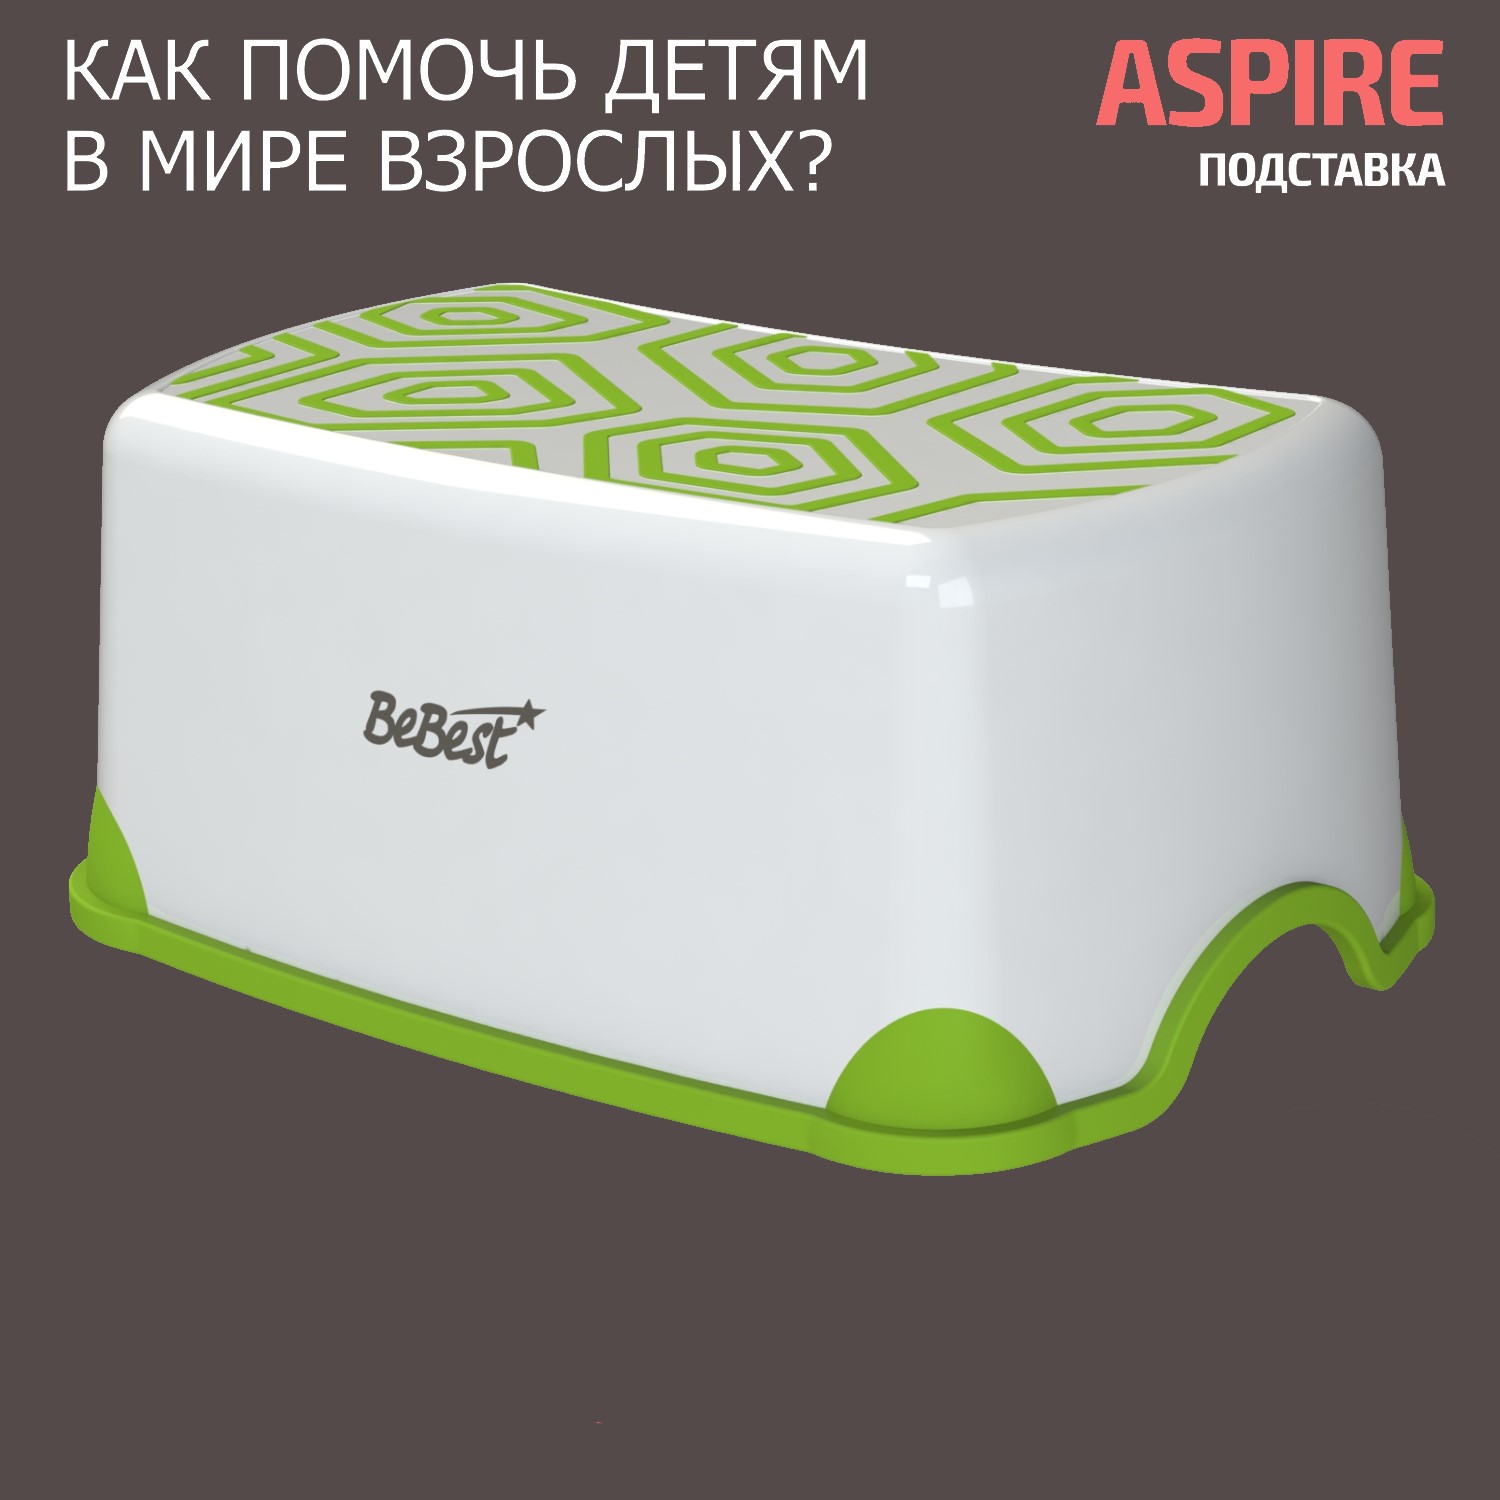 Подставка-табурет для детей BeBest Aspire бело-зеленый